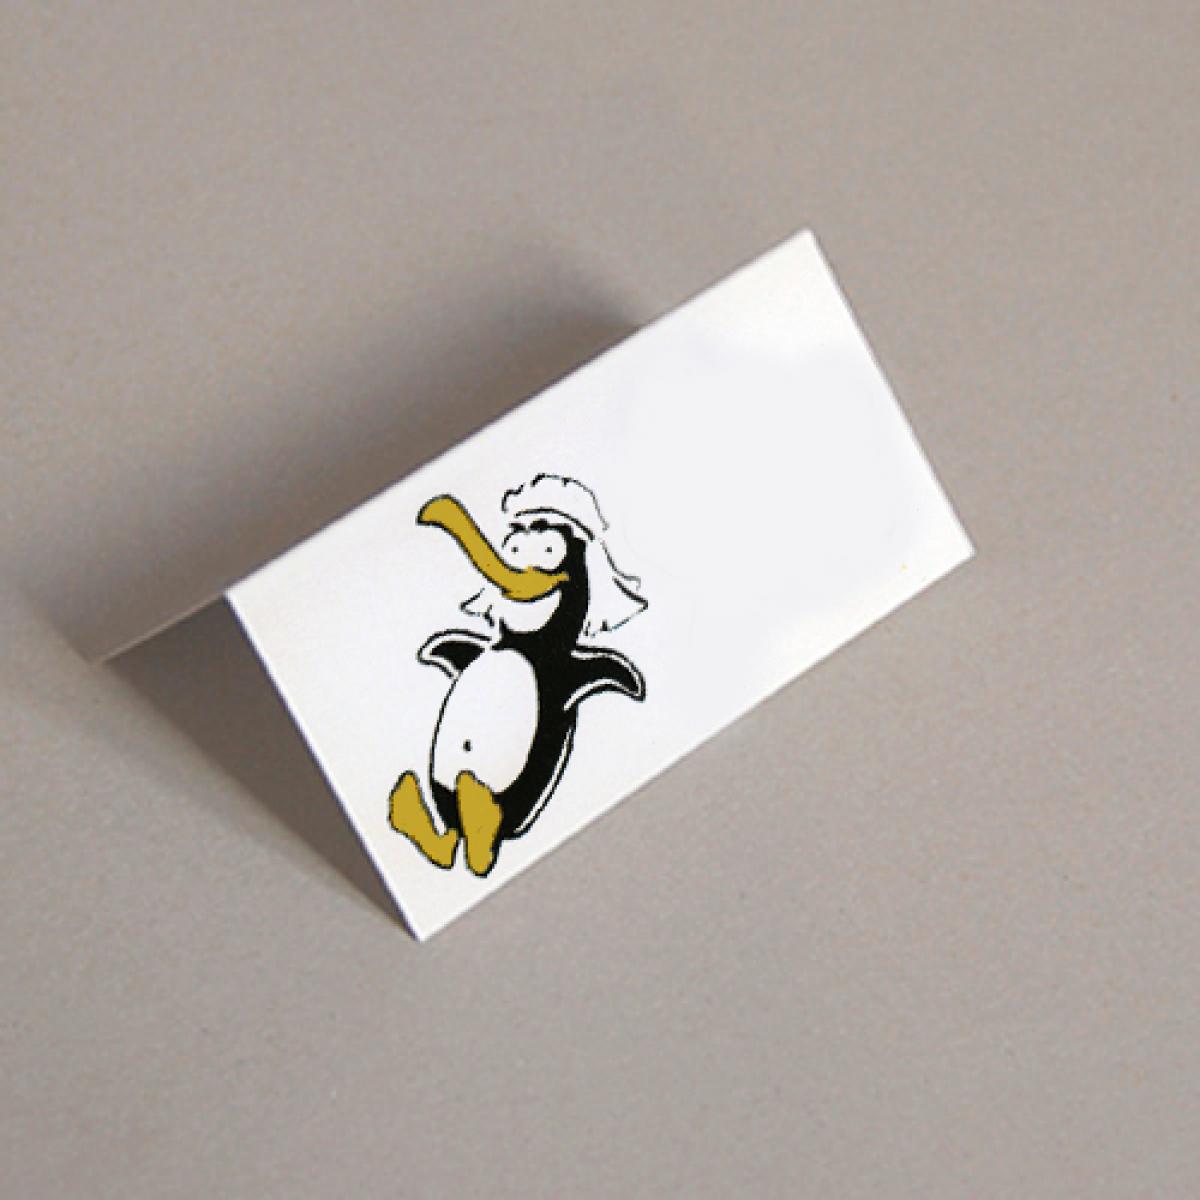 Tischkarte für die Hochzeit: Pinguinbraut